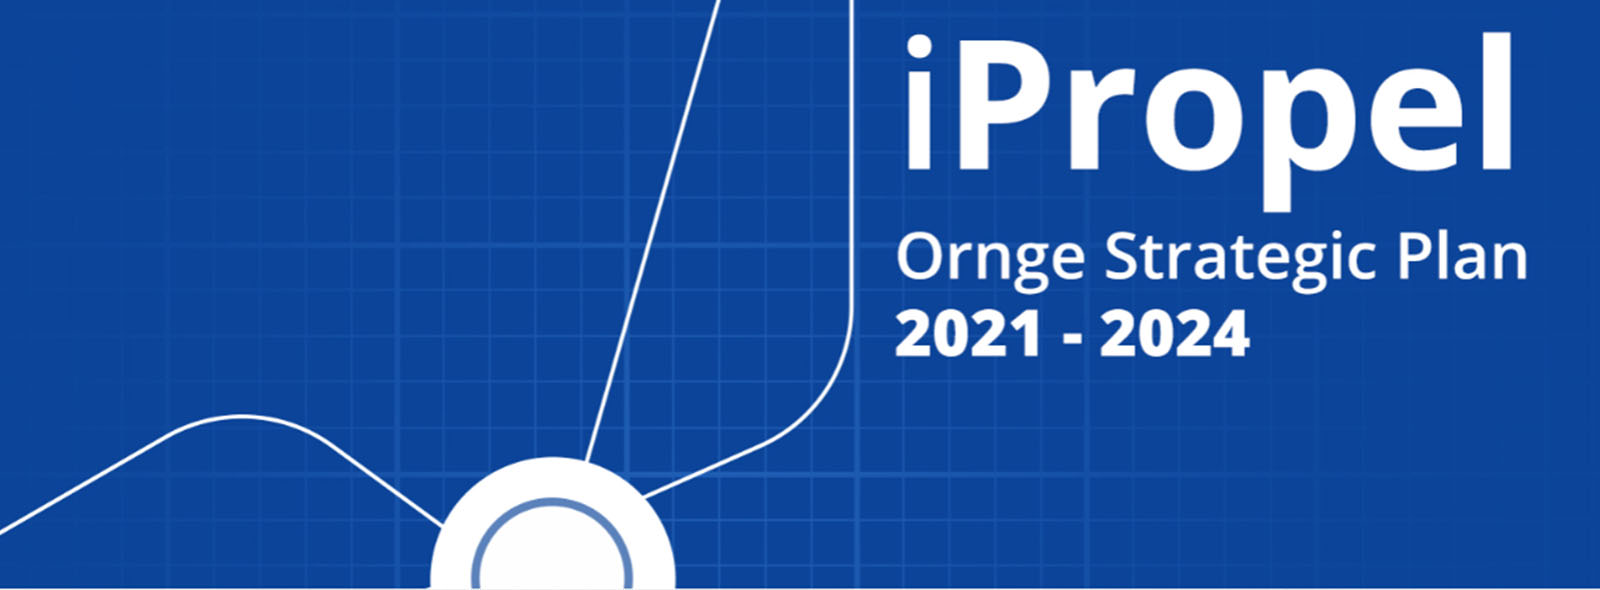 iPropel 2021-2024